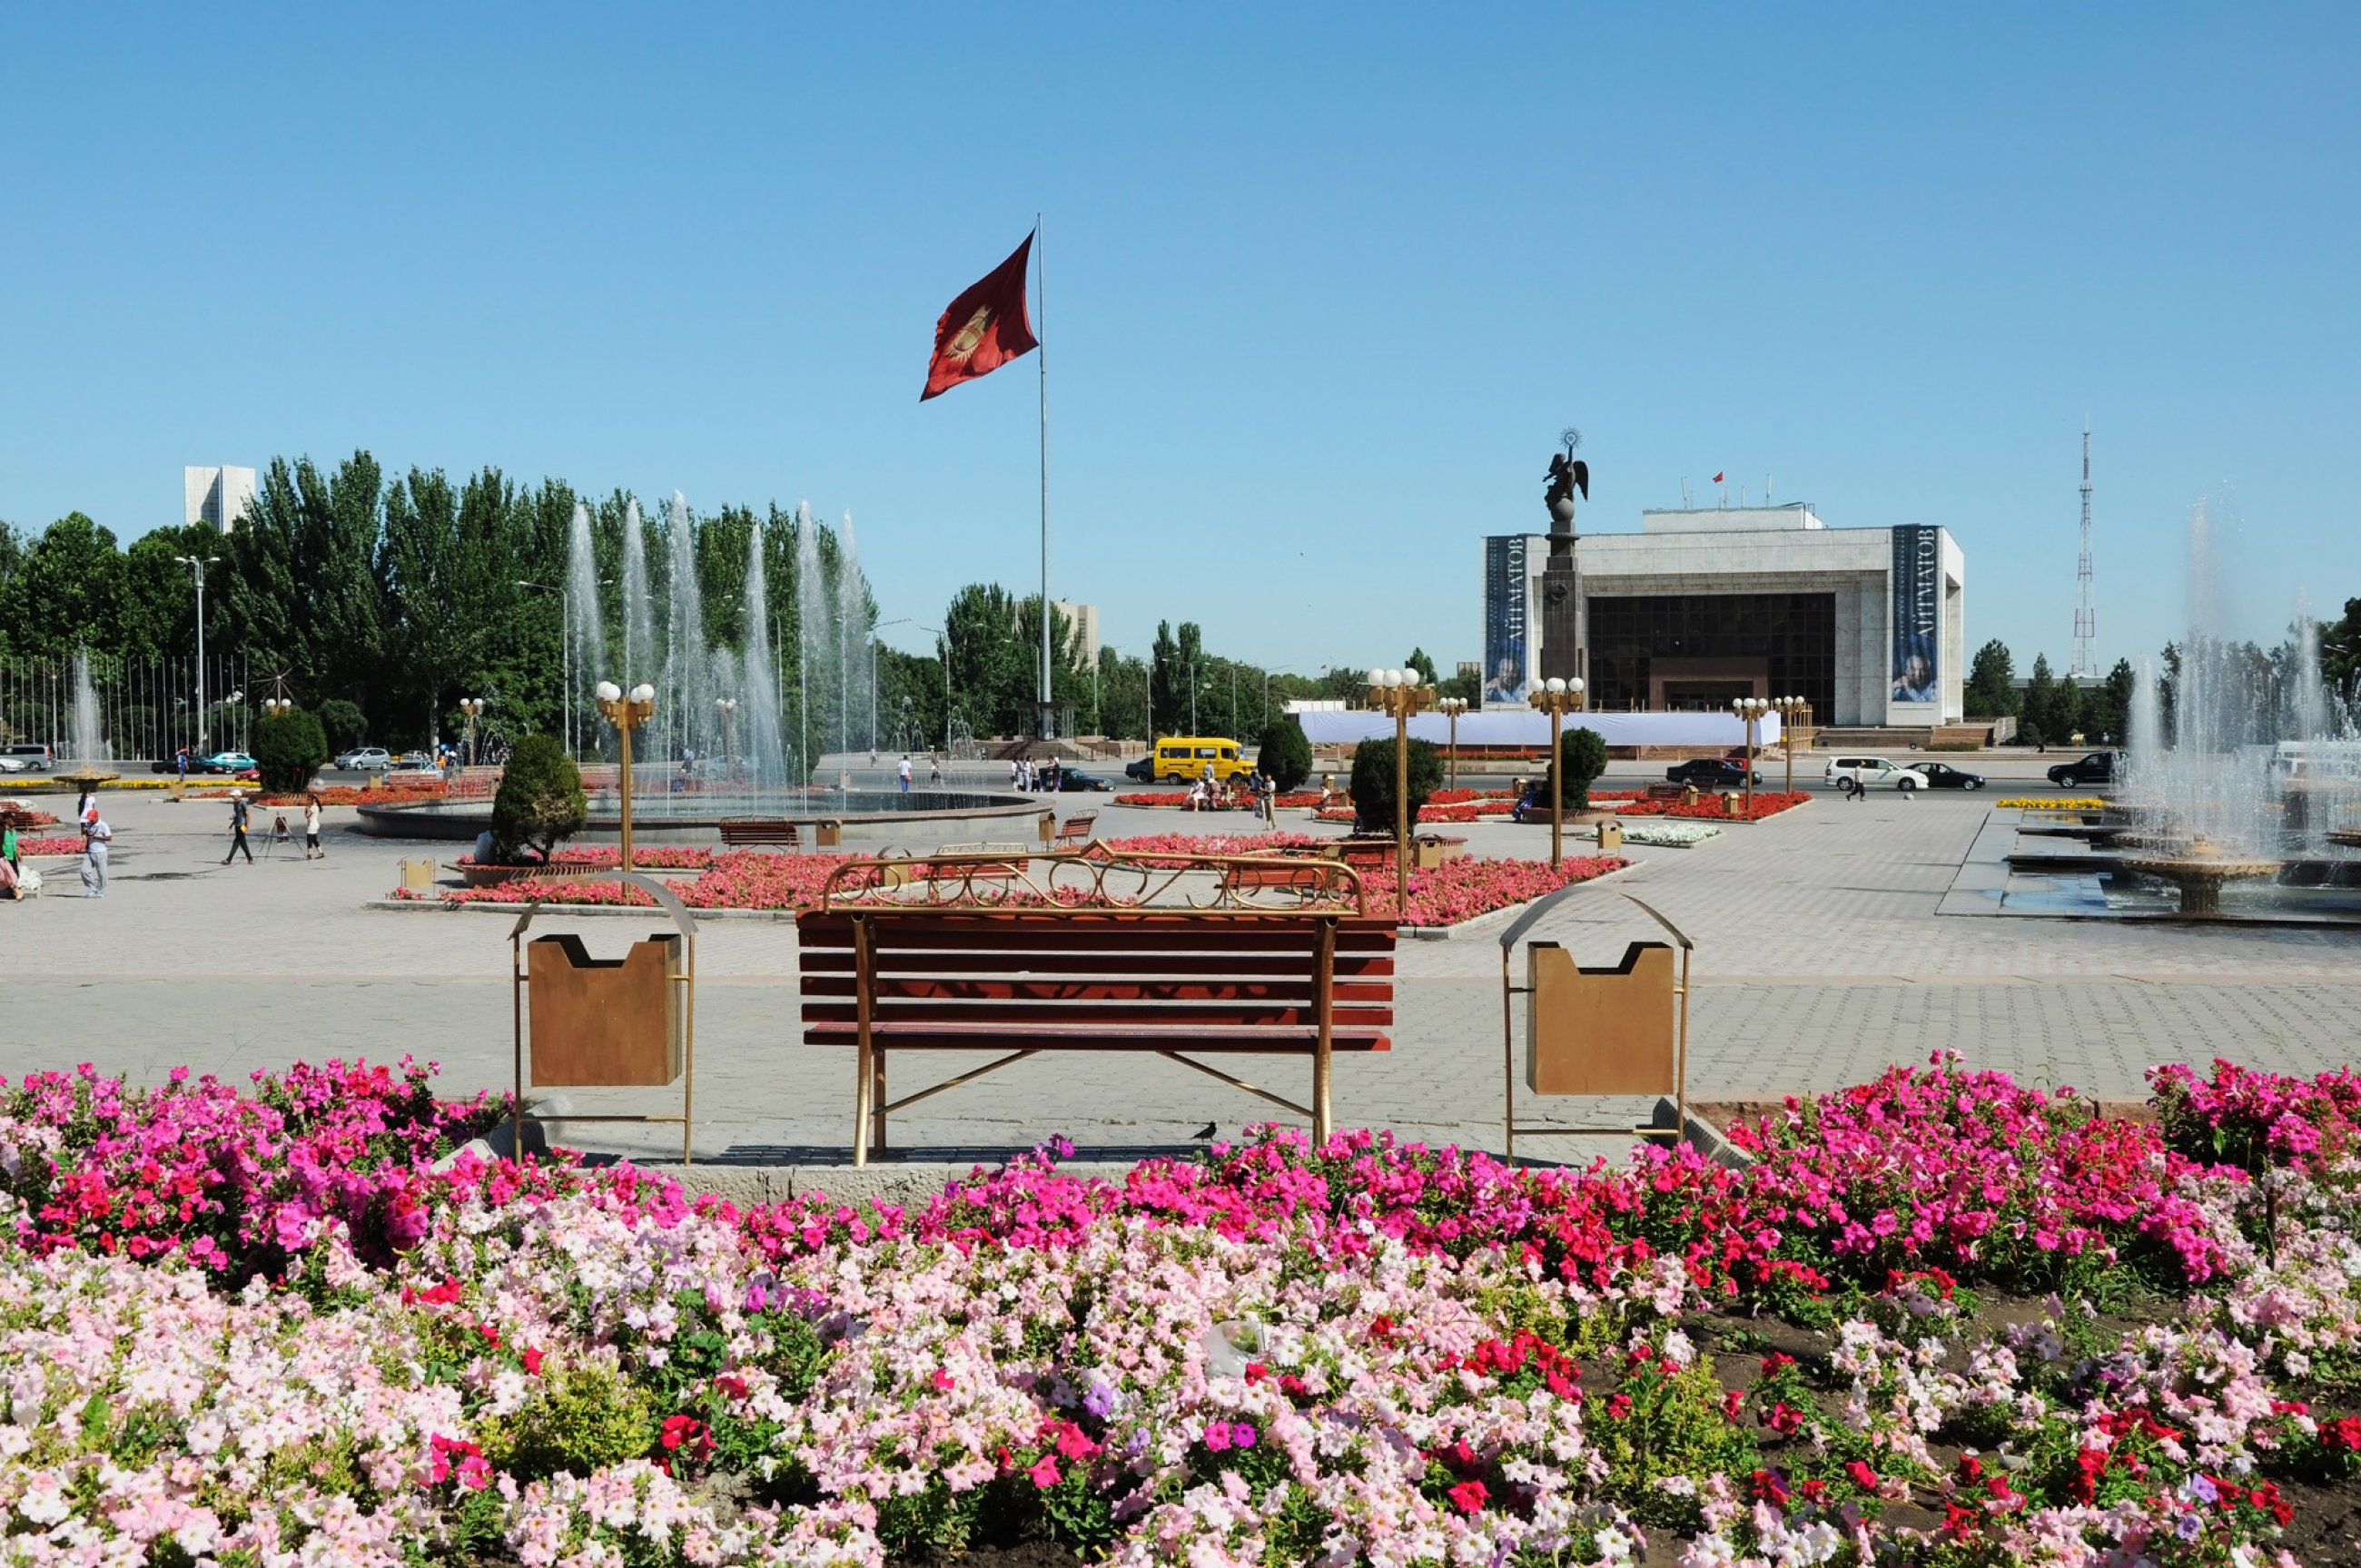 https://bubo.sk/uploads/galleries/7334/kirgizsko-central-square-in-bishkek.jpg